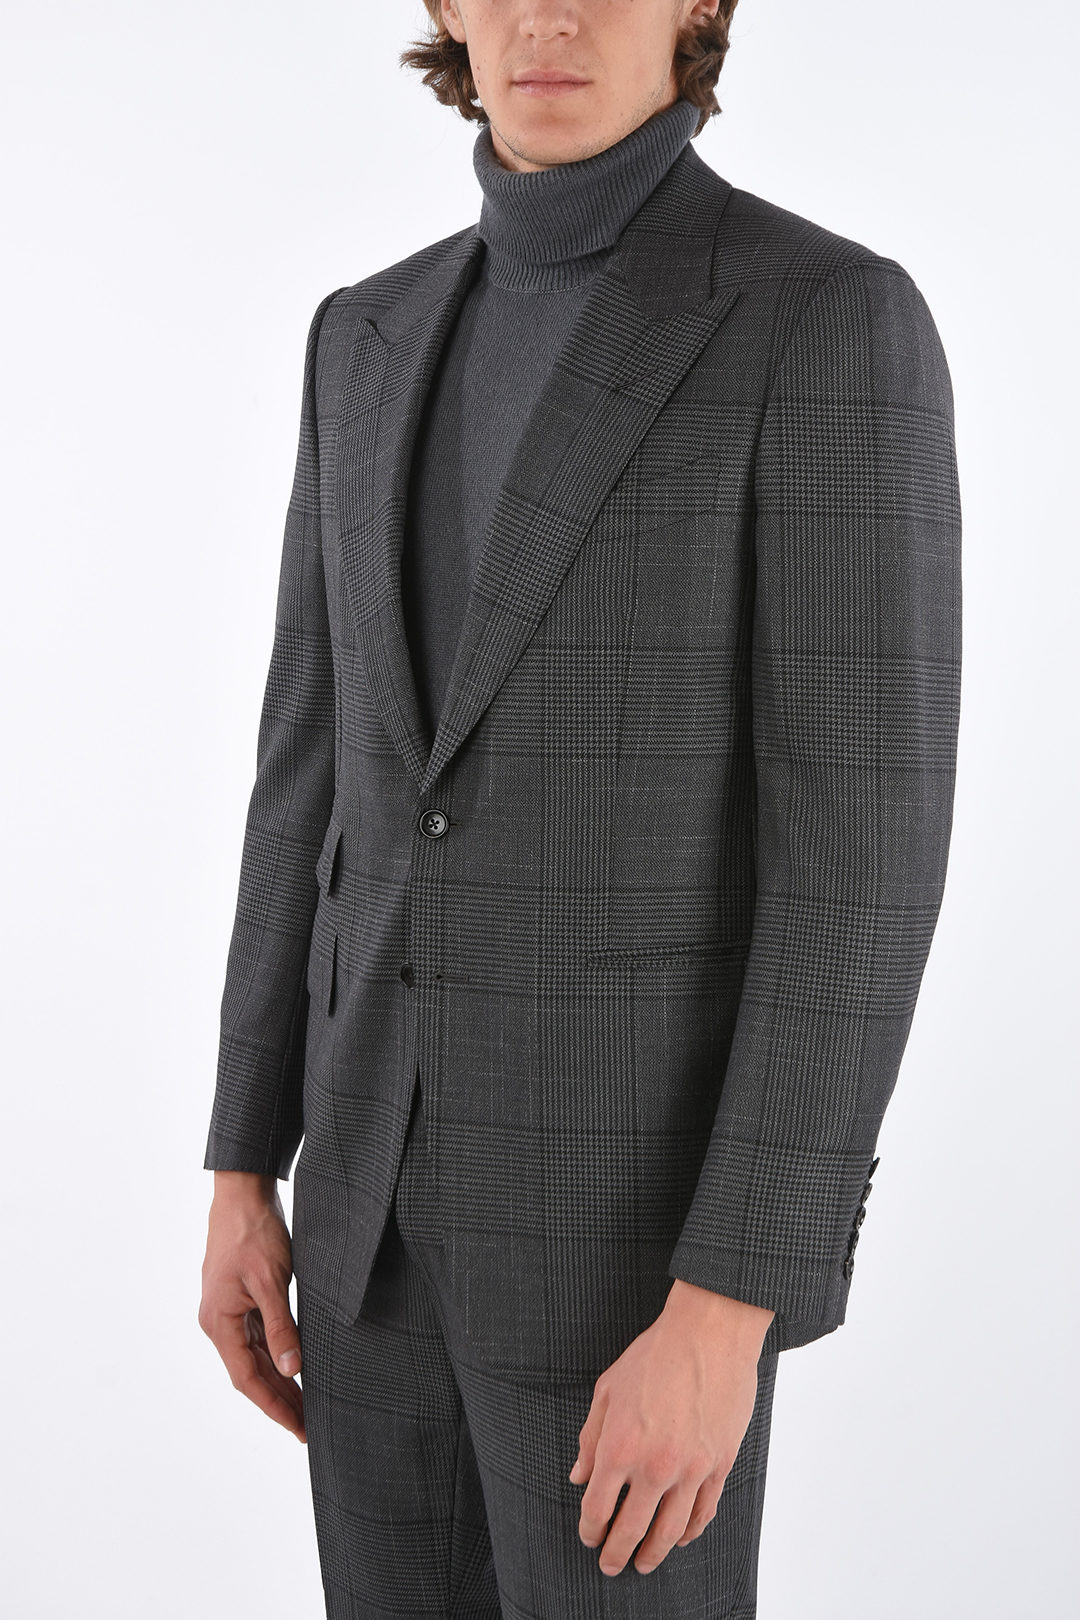 Tom Ford district check center vent peak lapel 2-button SHELTON suit drop  7R men - Glamood Outlet